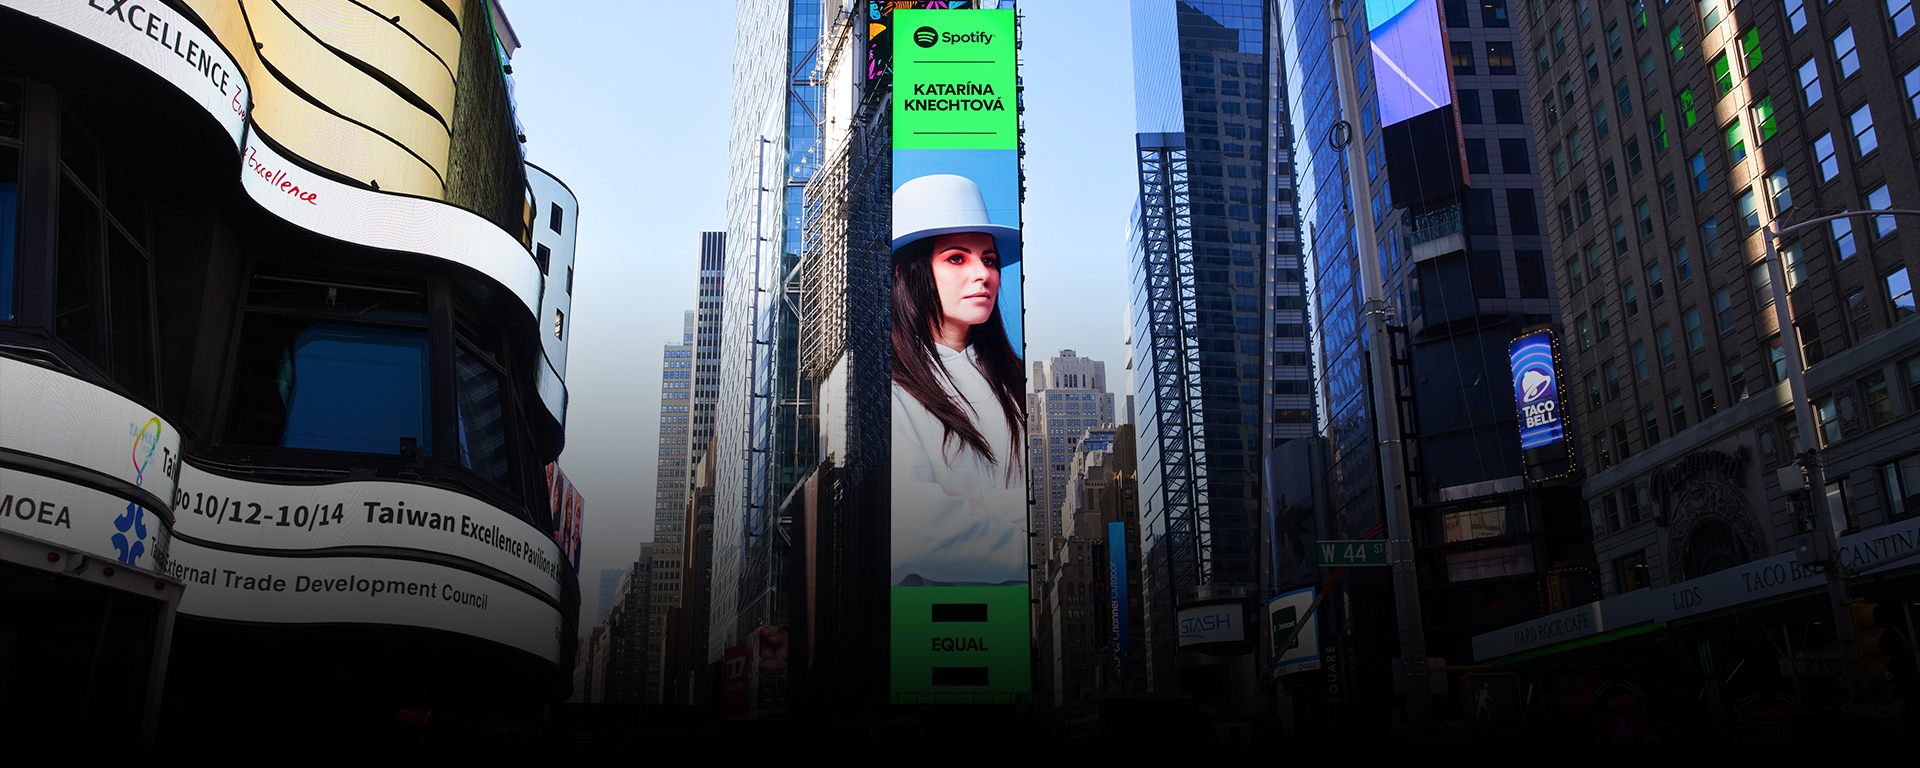 Katarína Knechtová je v celosvetovej kampani Spotify Equal a na Times Square v New Yorku!